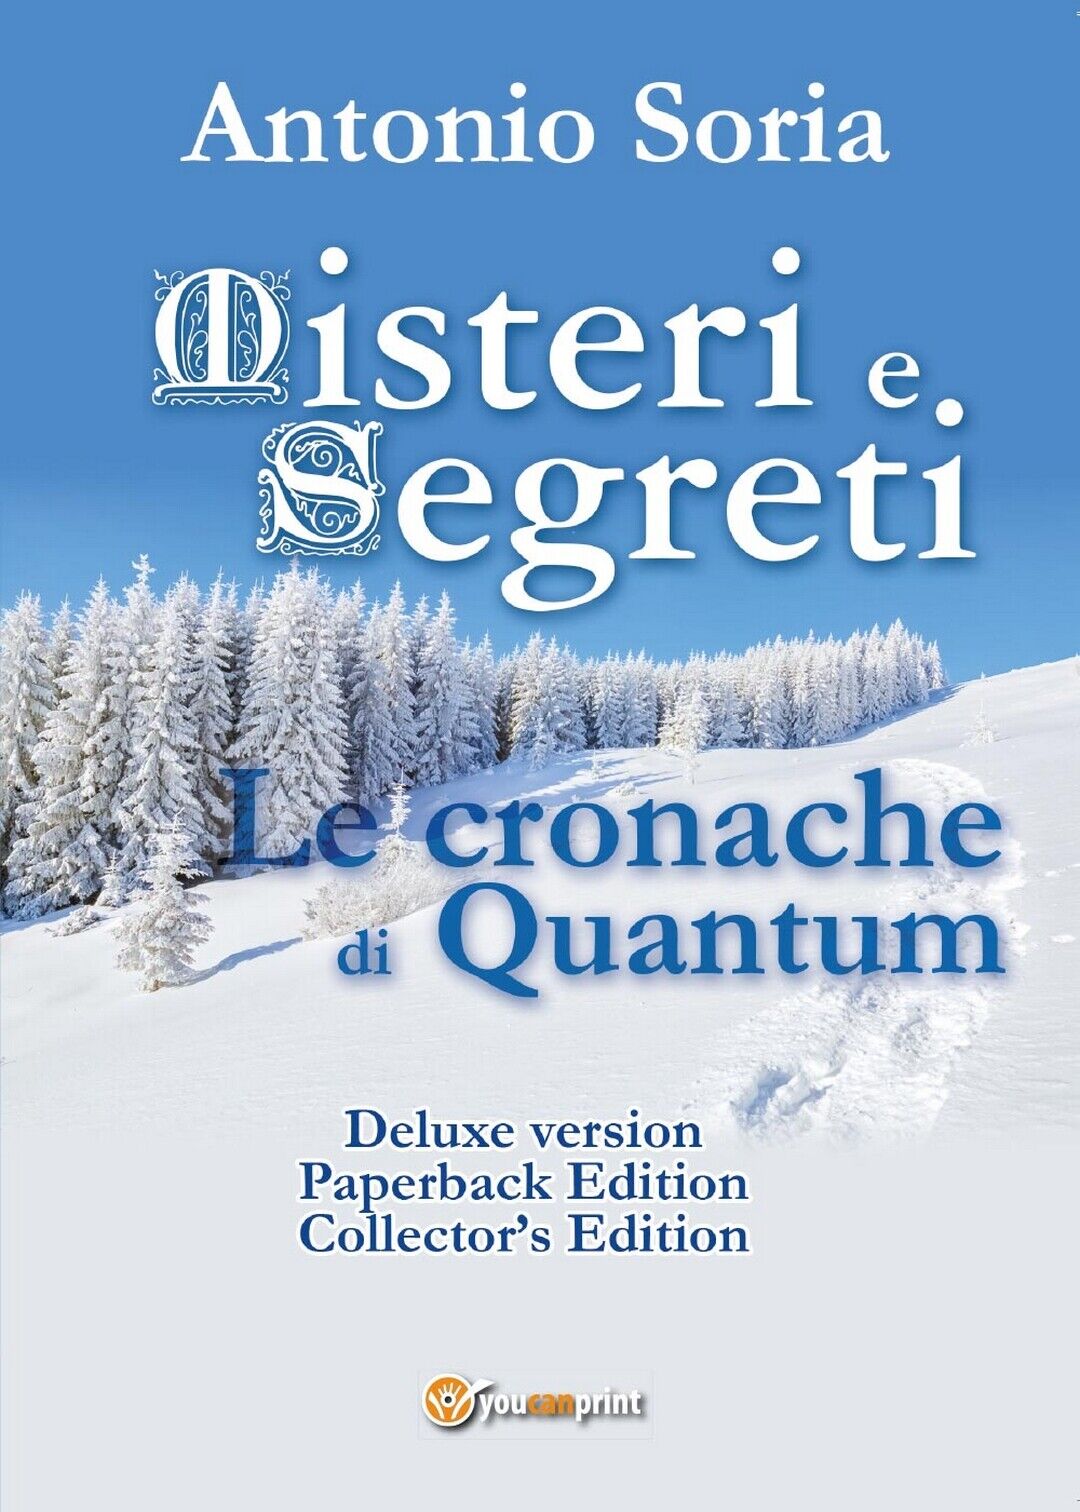 Misteri e Segreti. Le cronache di Quantum (Deluxe version) Paperback Edition